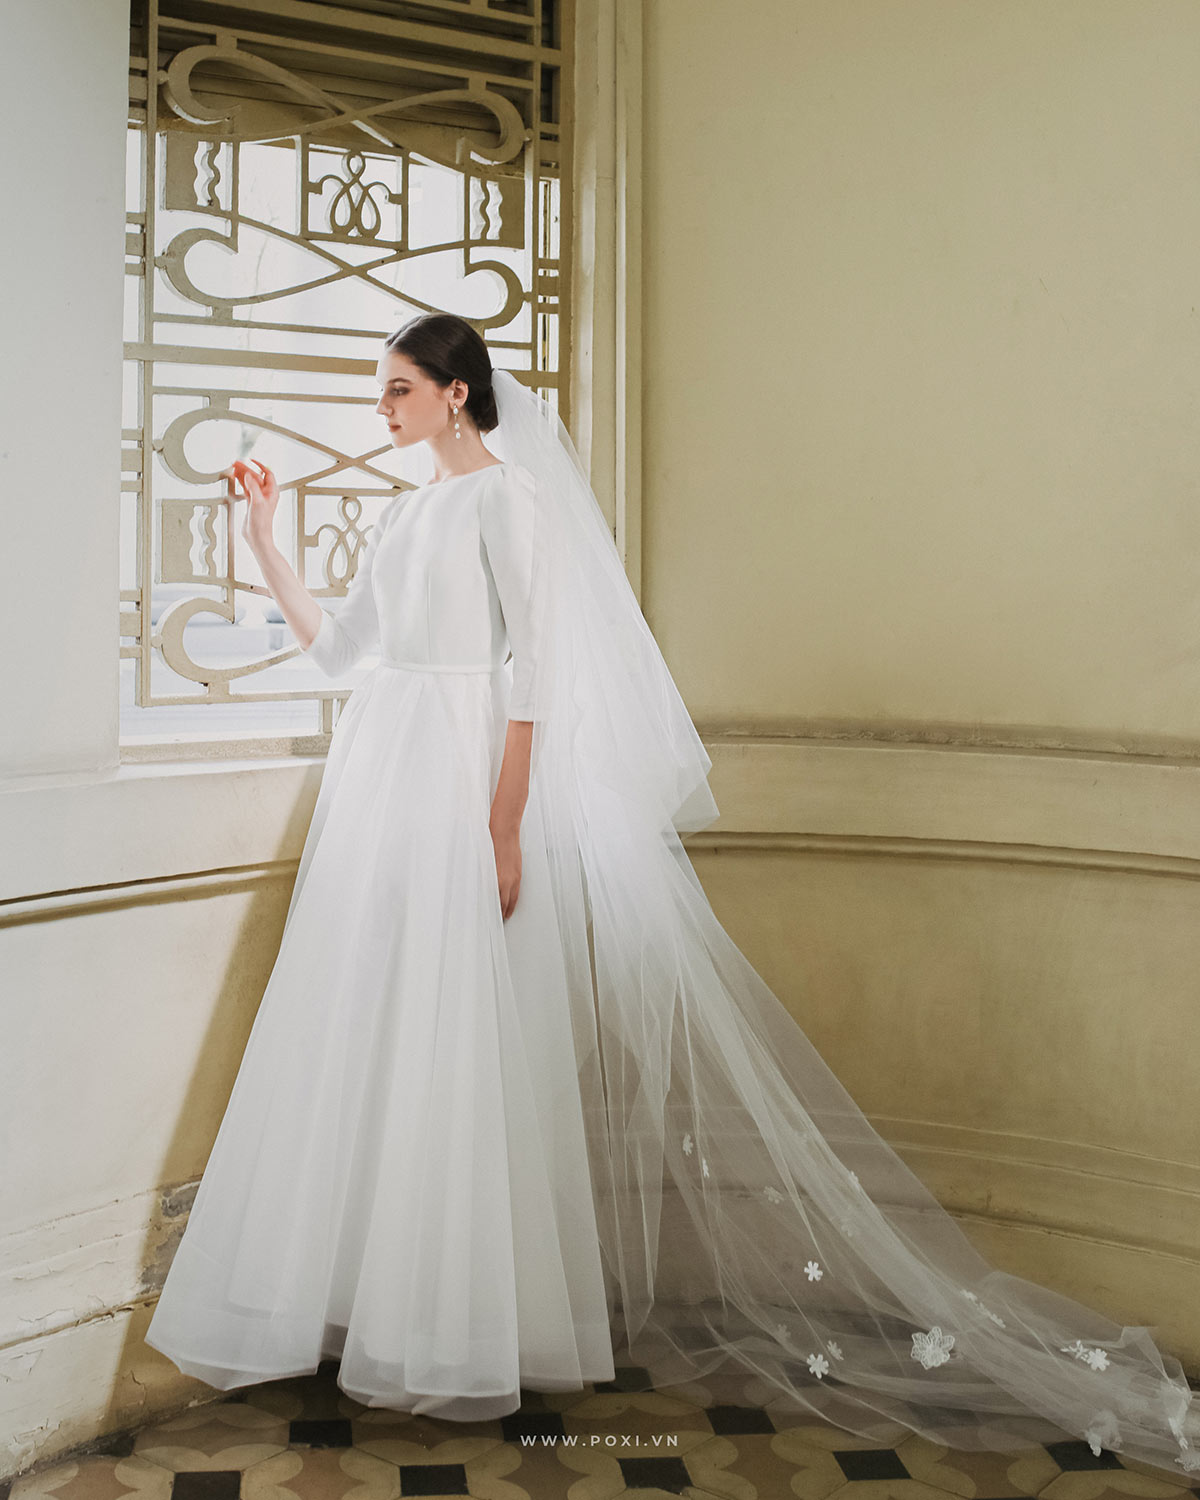 5 mẫu váy cưới 2 trong 1 tiện lợi và hiện đại năm 2019